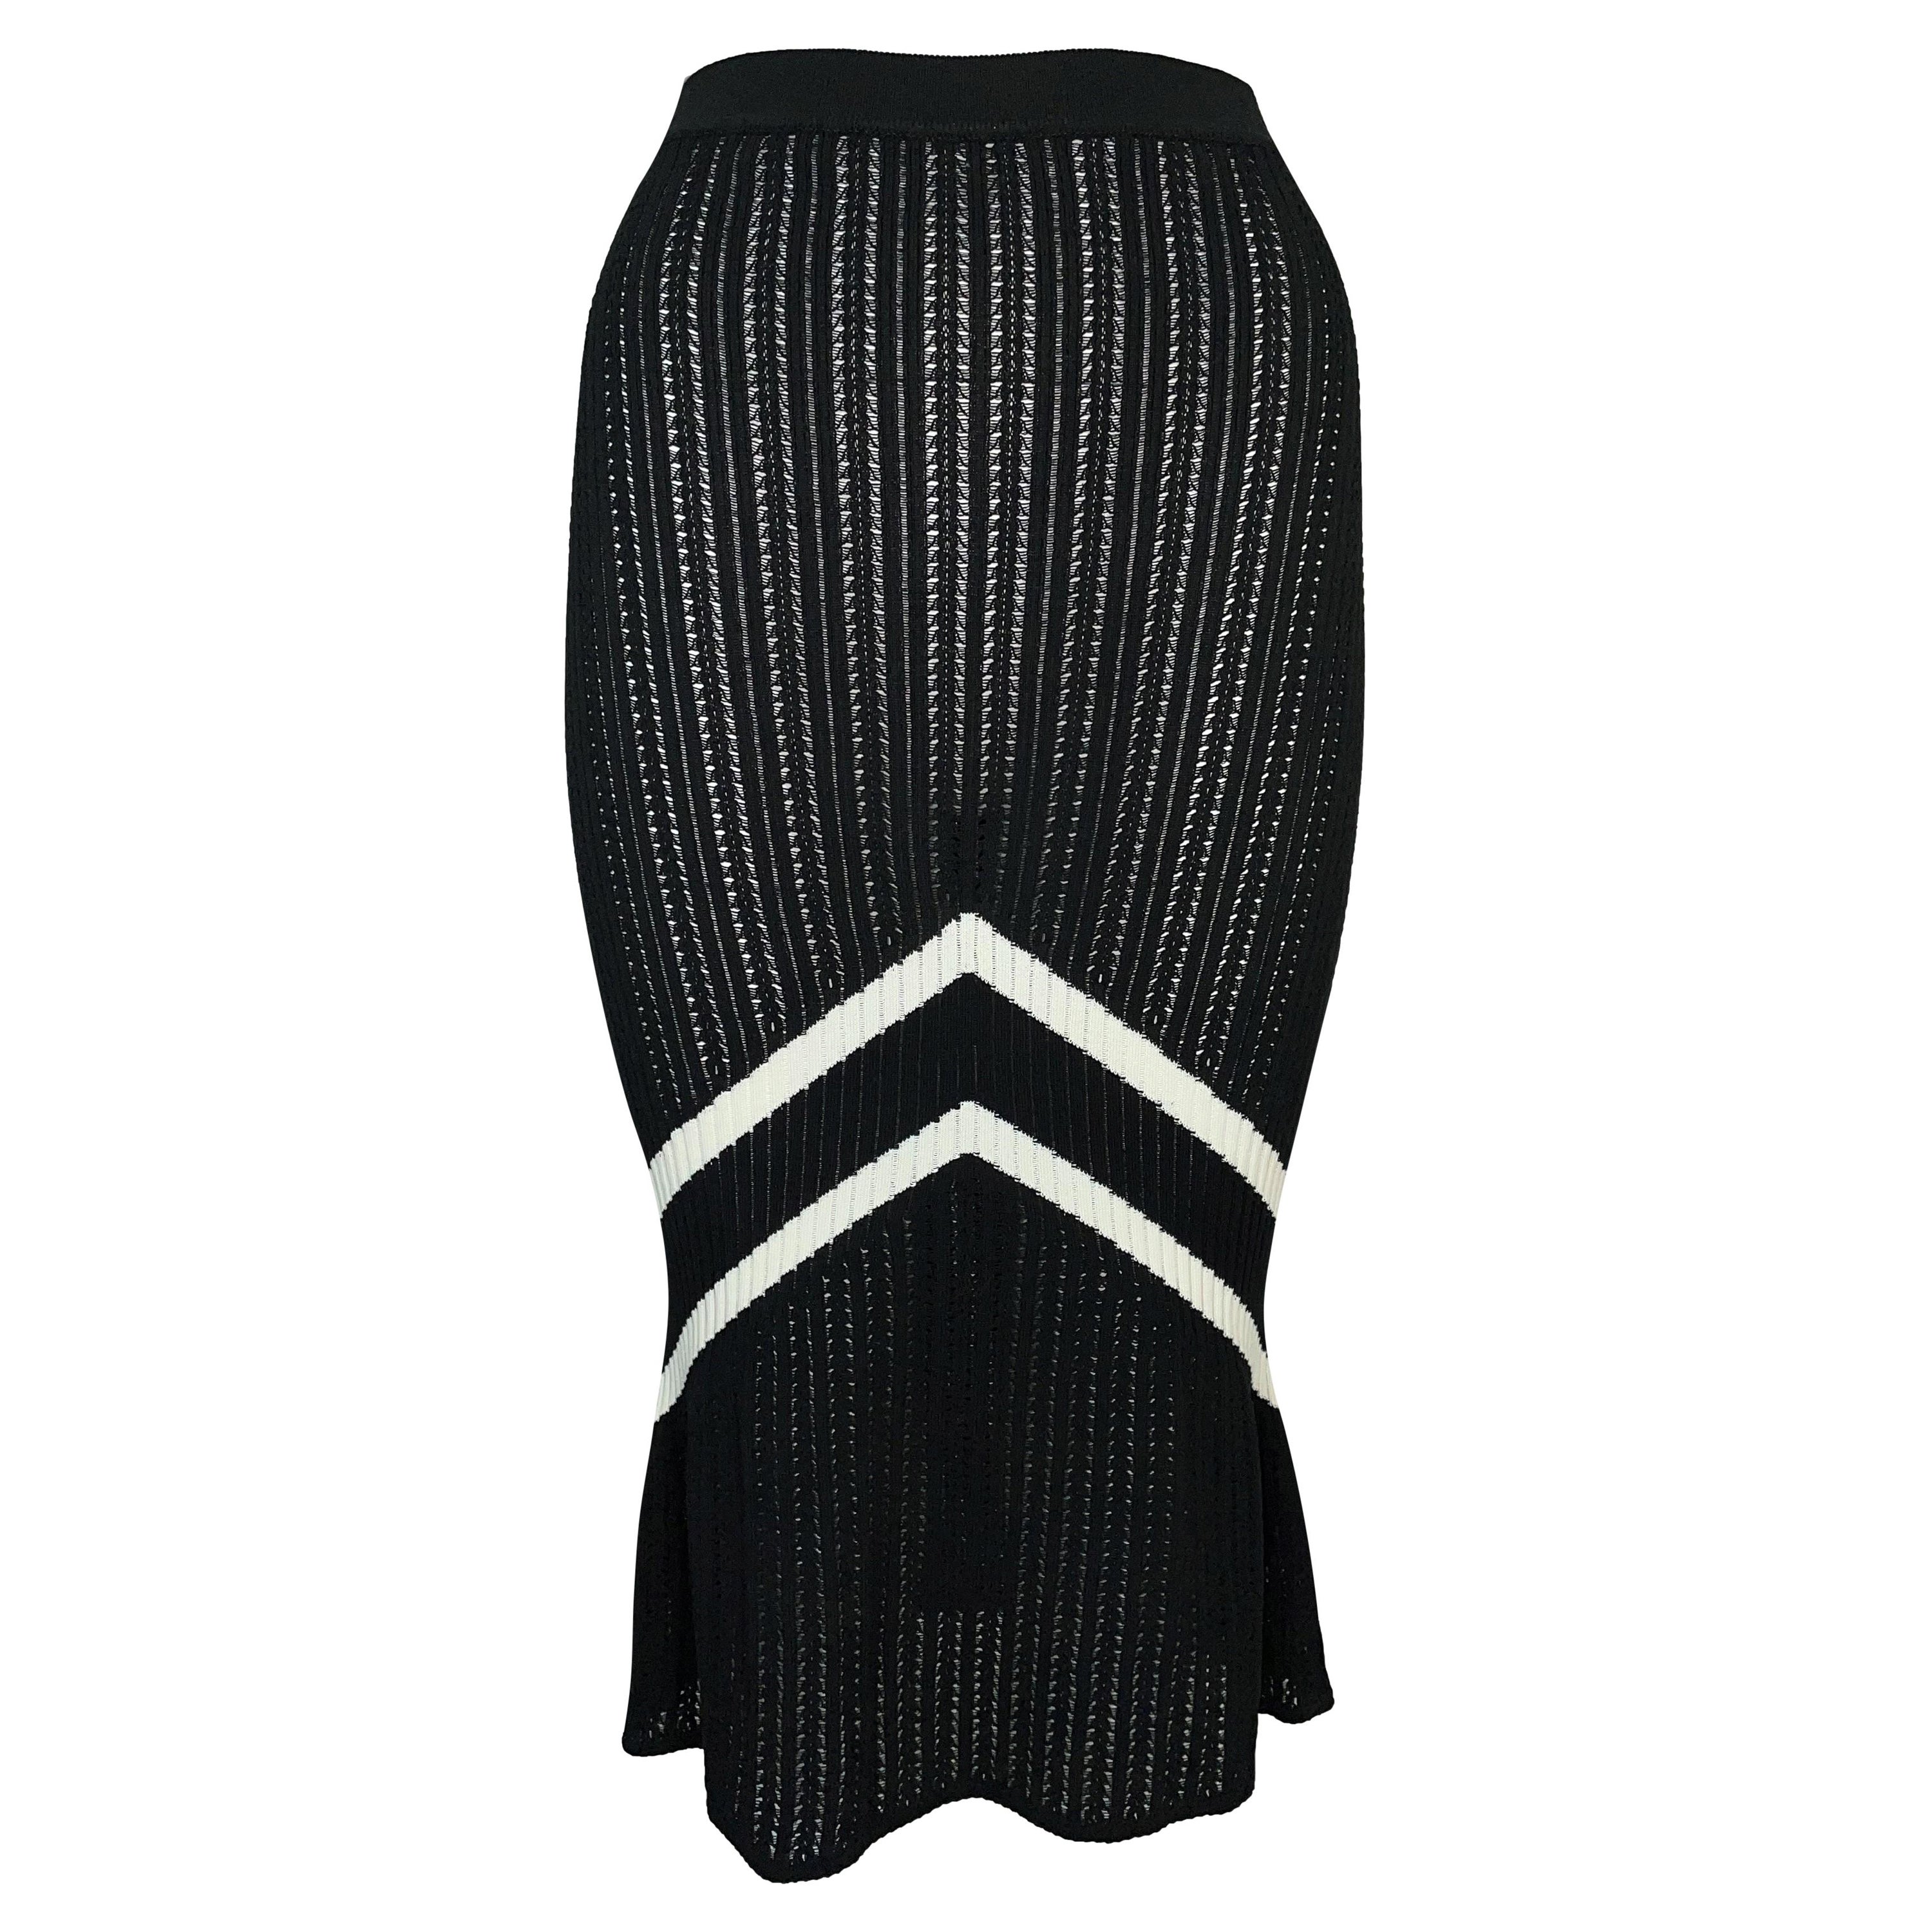 S/S 1999 Christian Dior John Galliano Black & White Knit Chevron Trumpet Skirt